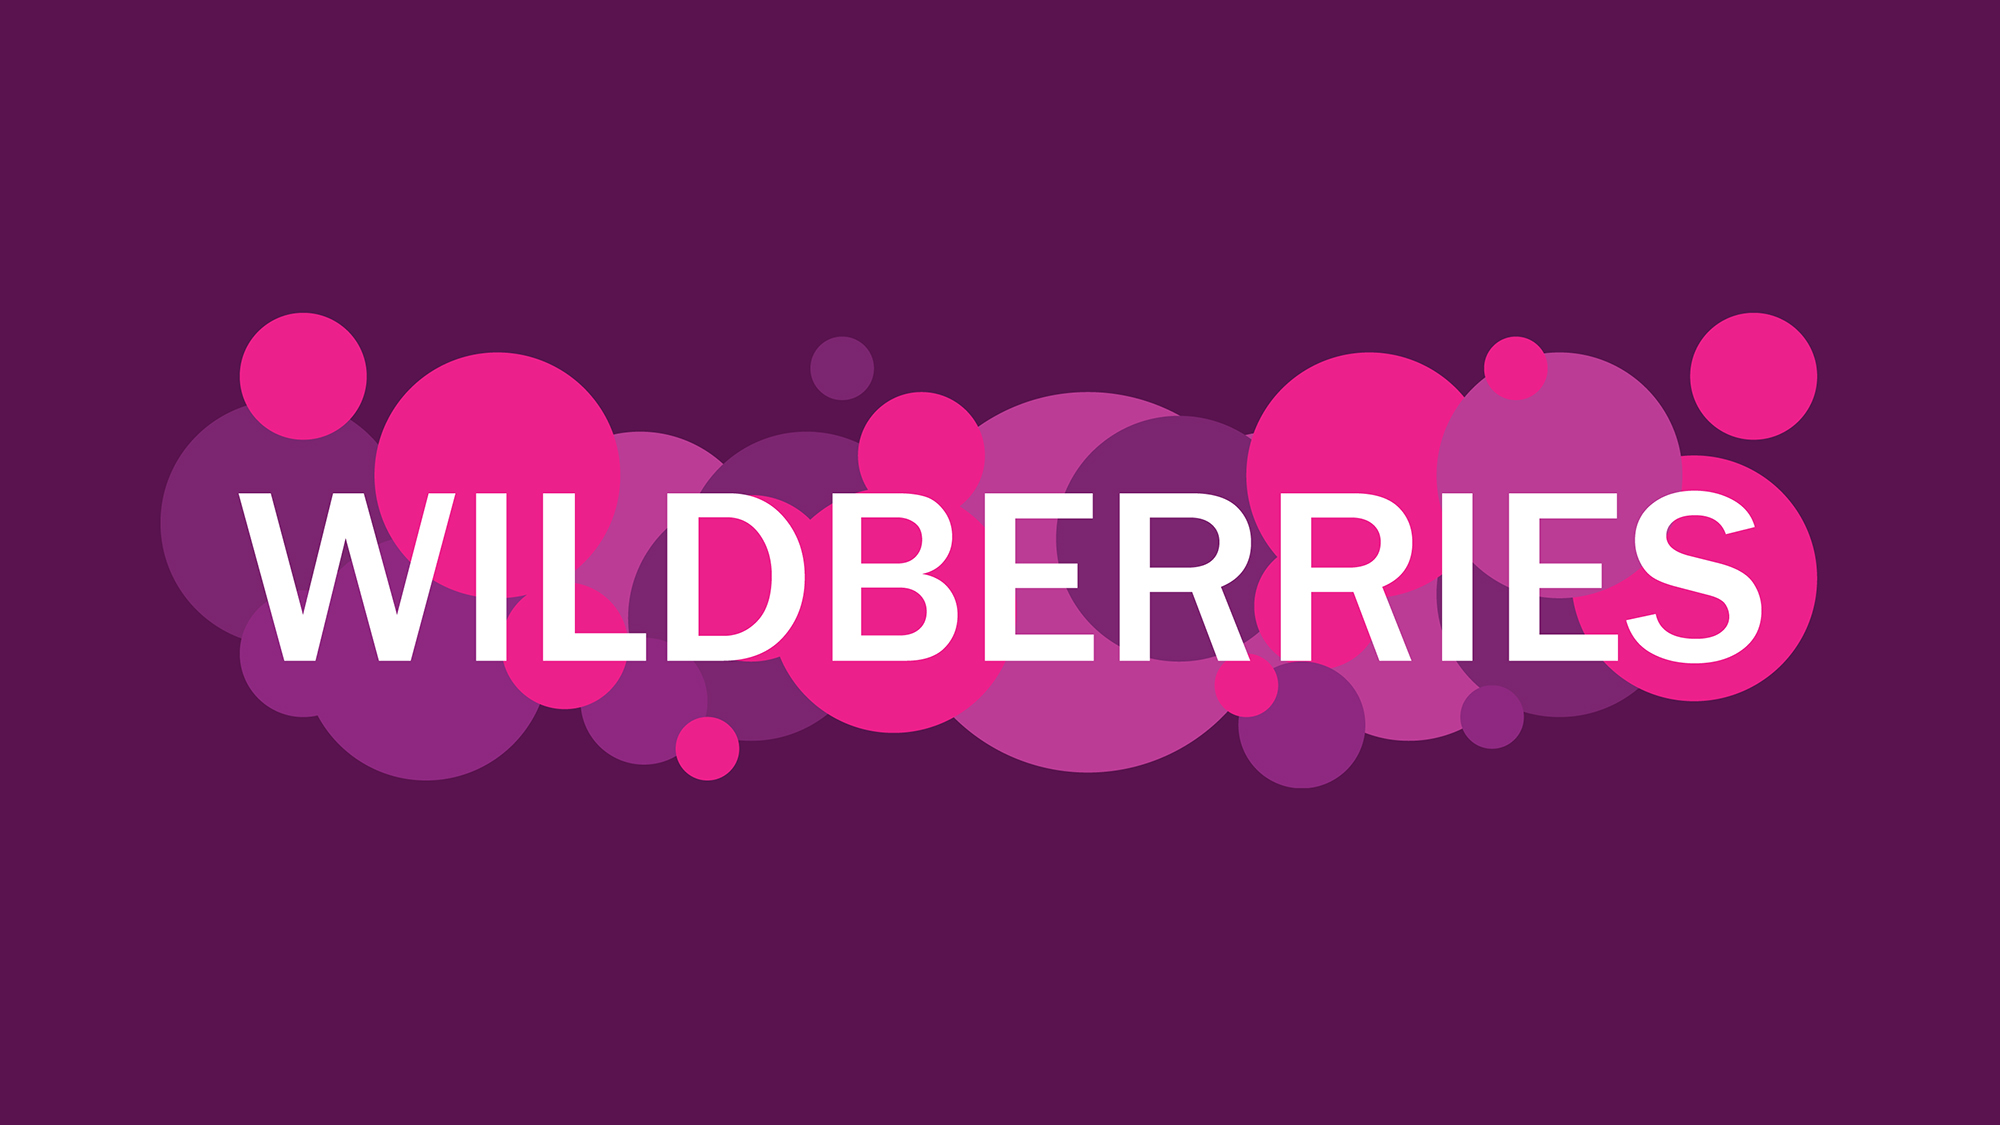 Wildberries-ը կներկայացնի պատվիրելուց հետո գնումը չեղարկելու տարբերակ